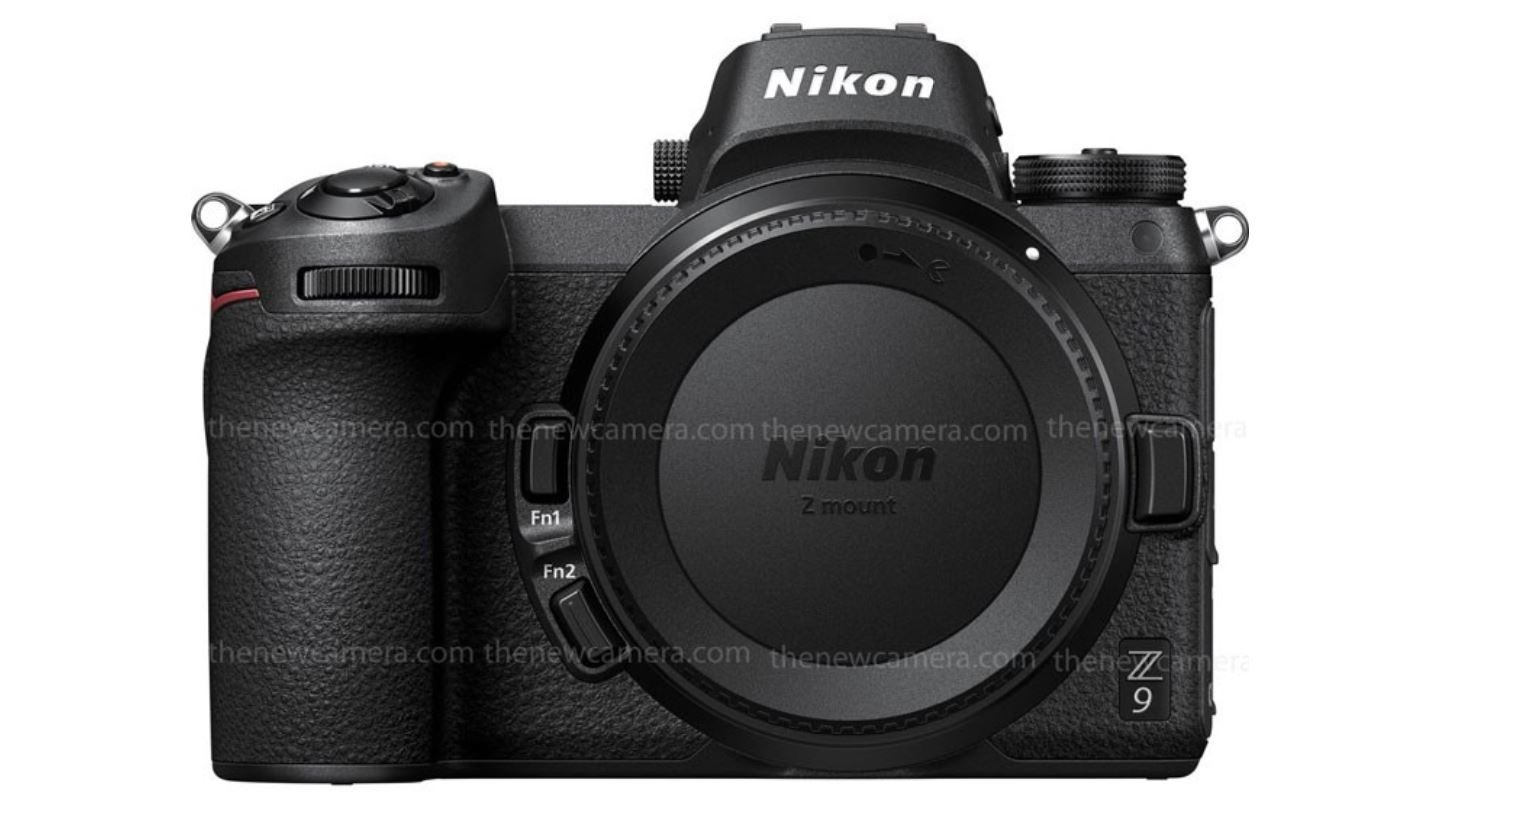 Tổng hợp các máy ảnh sắp ra mắt của Nikon trong năm 2020